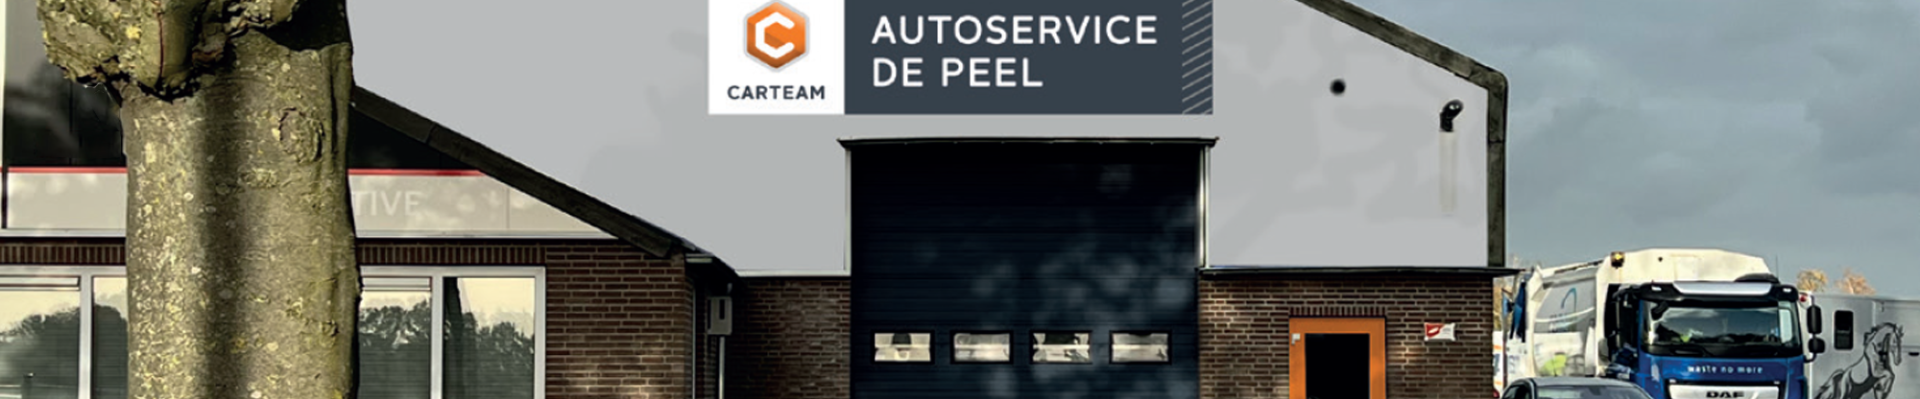 Carteam Autoservice de Peel